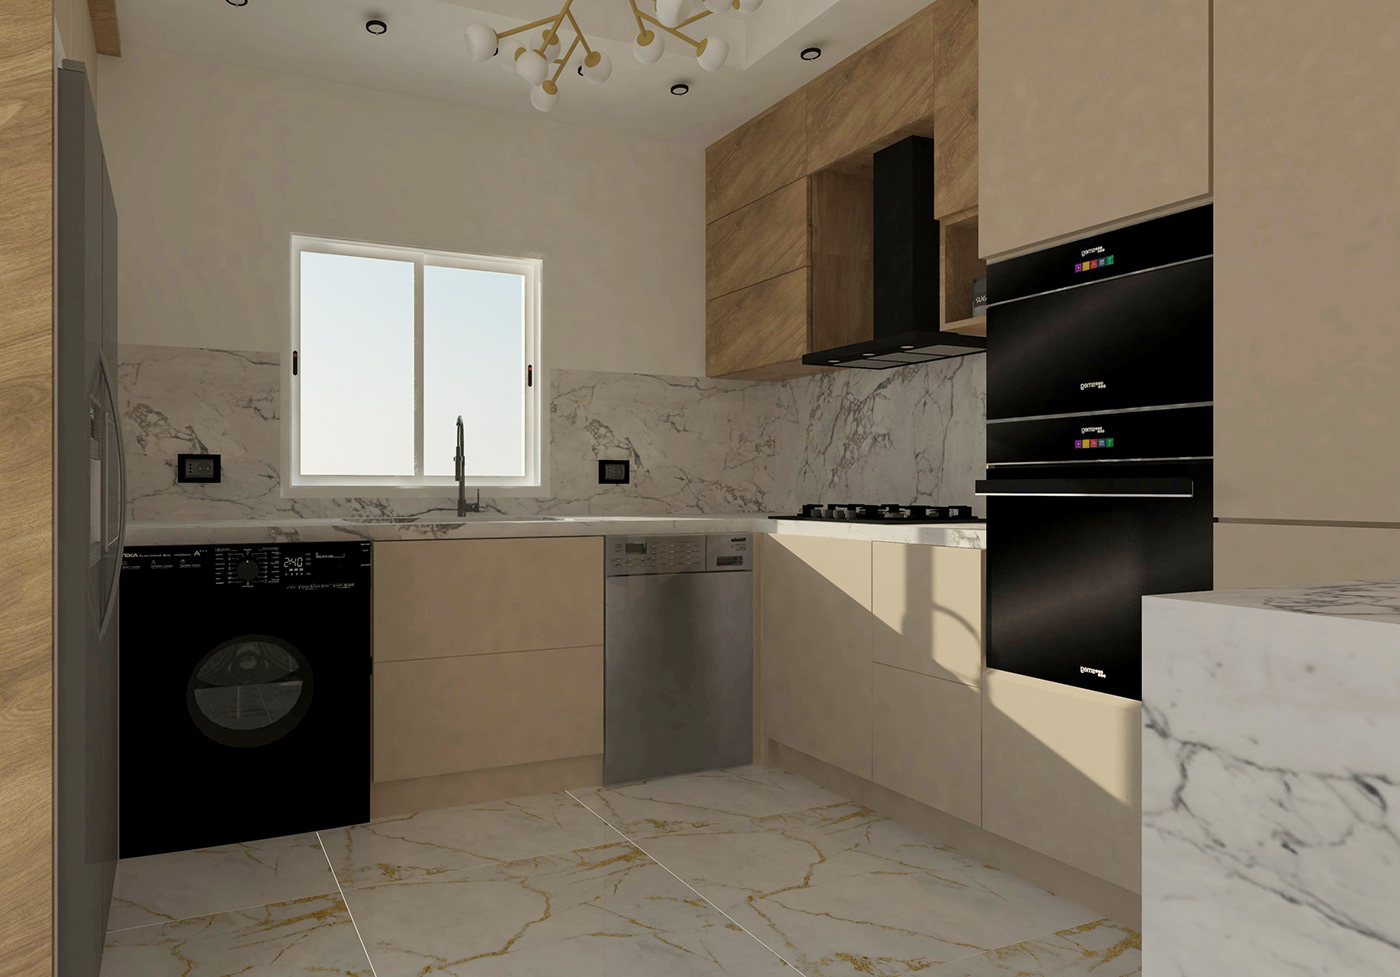 Interior kitchen design visualization Render interior design  modern 3D vray